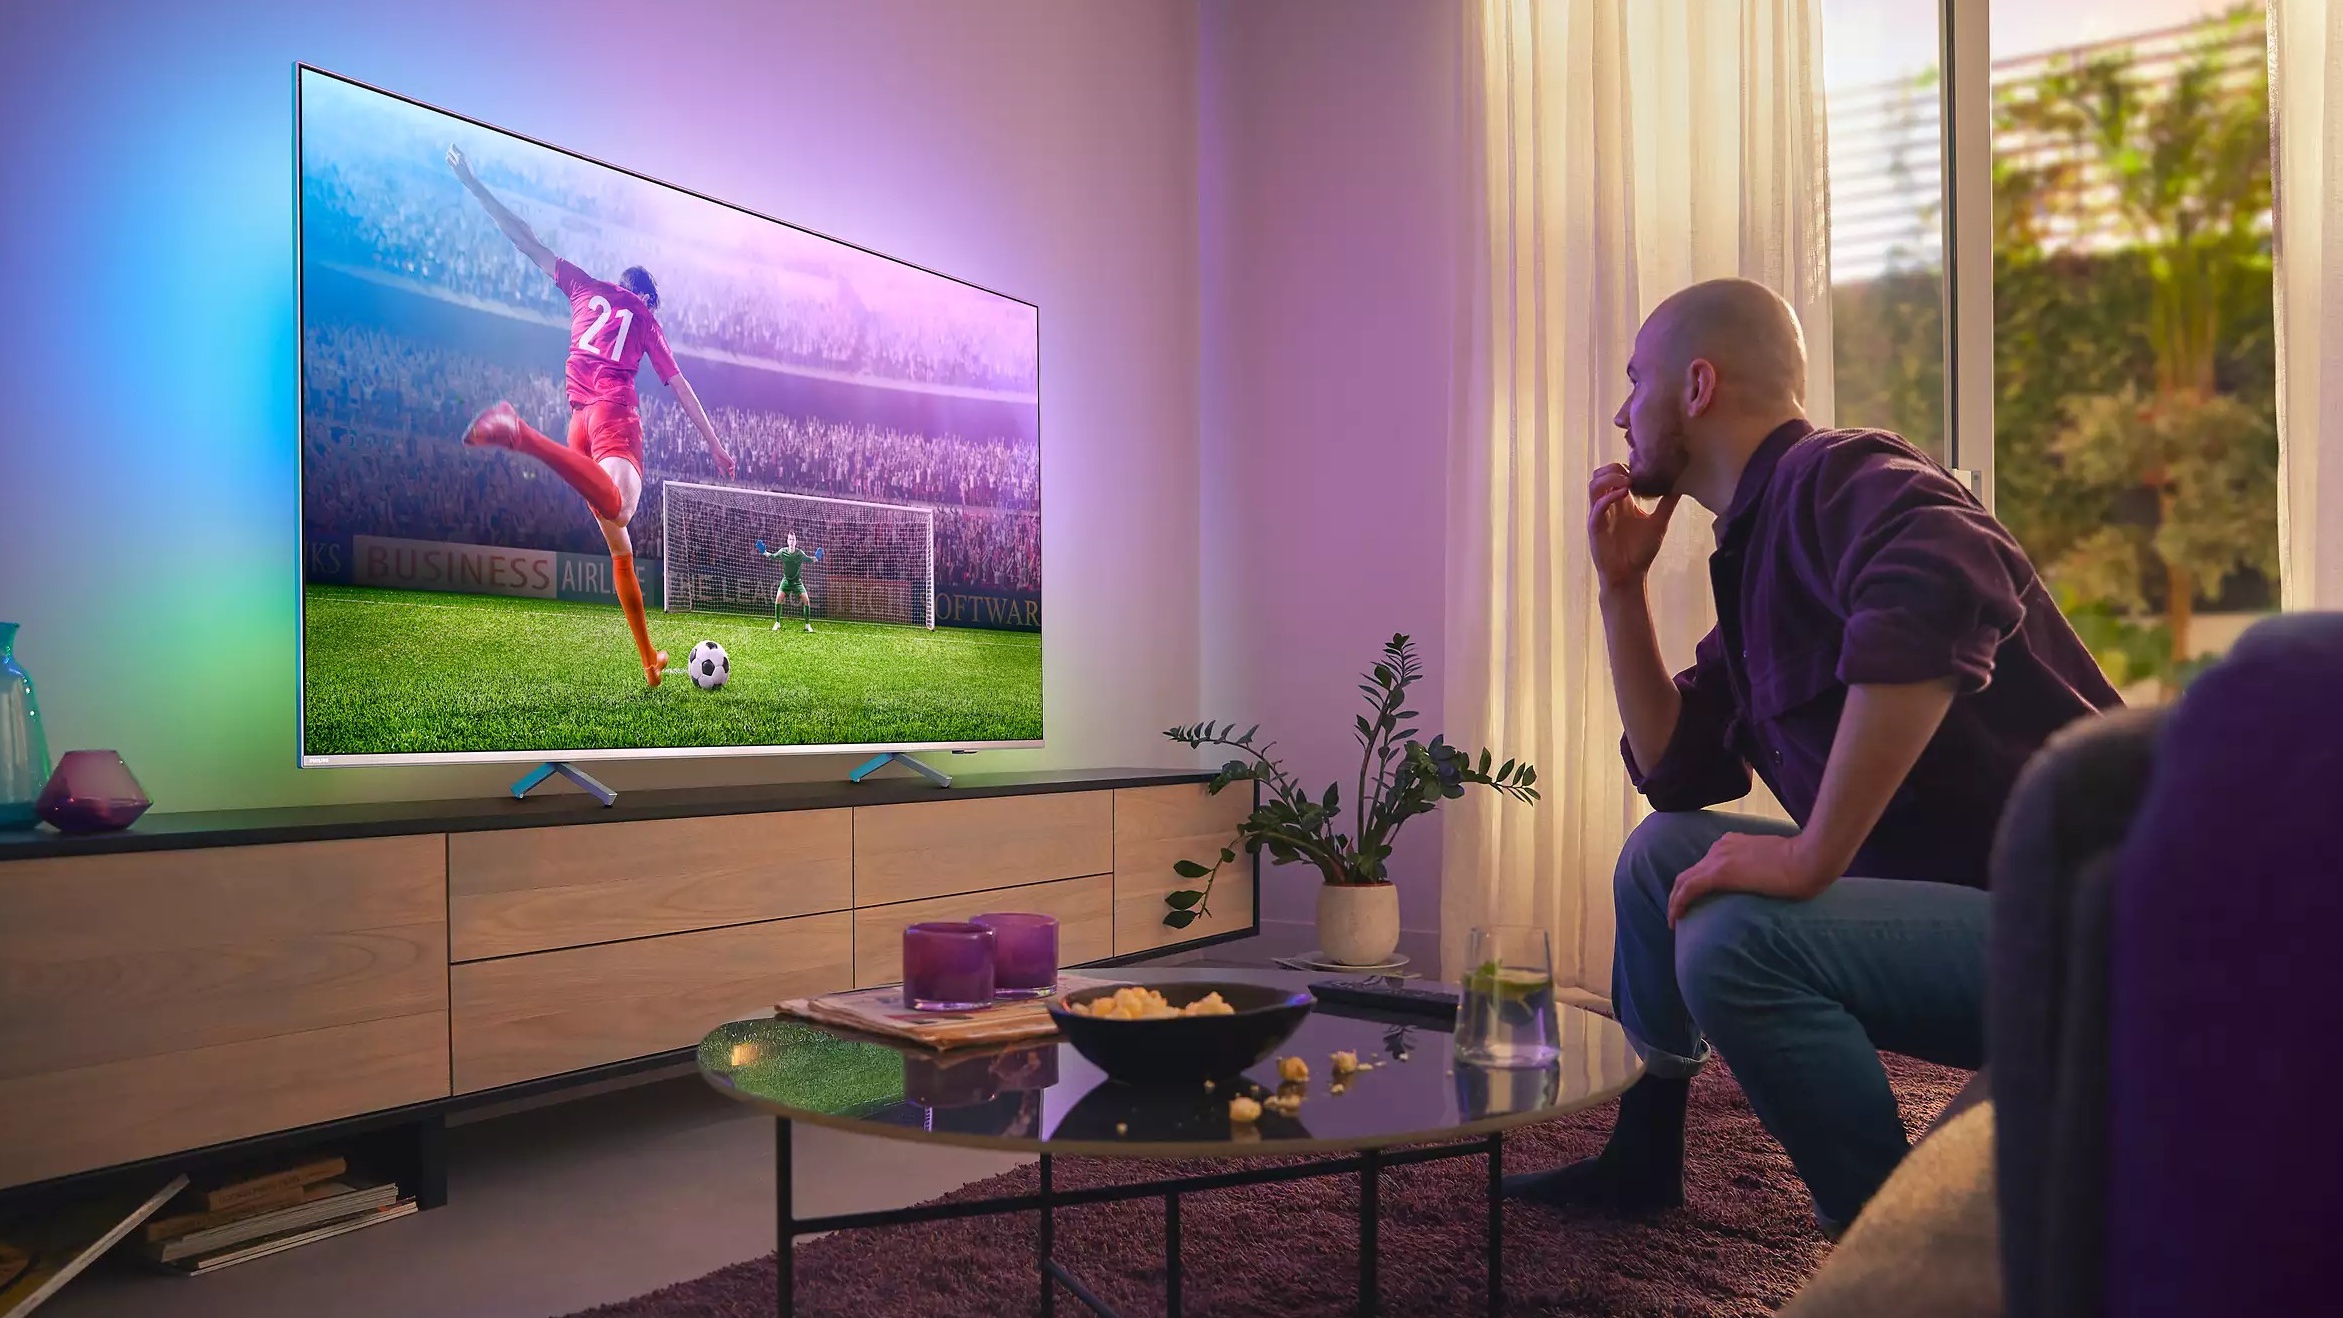 La empieza 12 de agosto, estas Smart TV tienen apps para ver los partidos | Computer Hoy